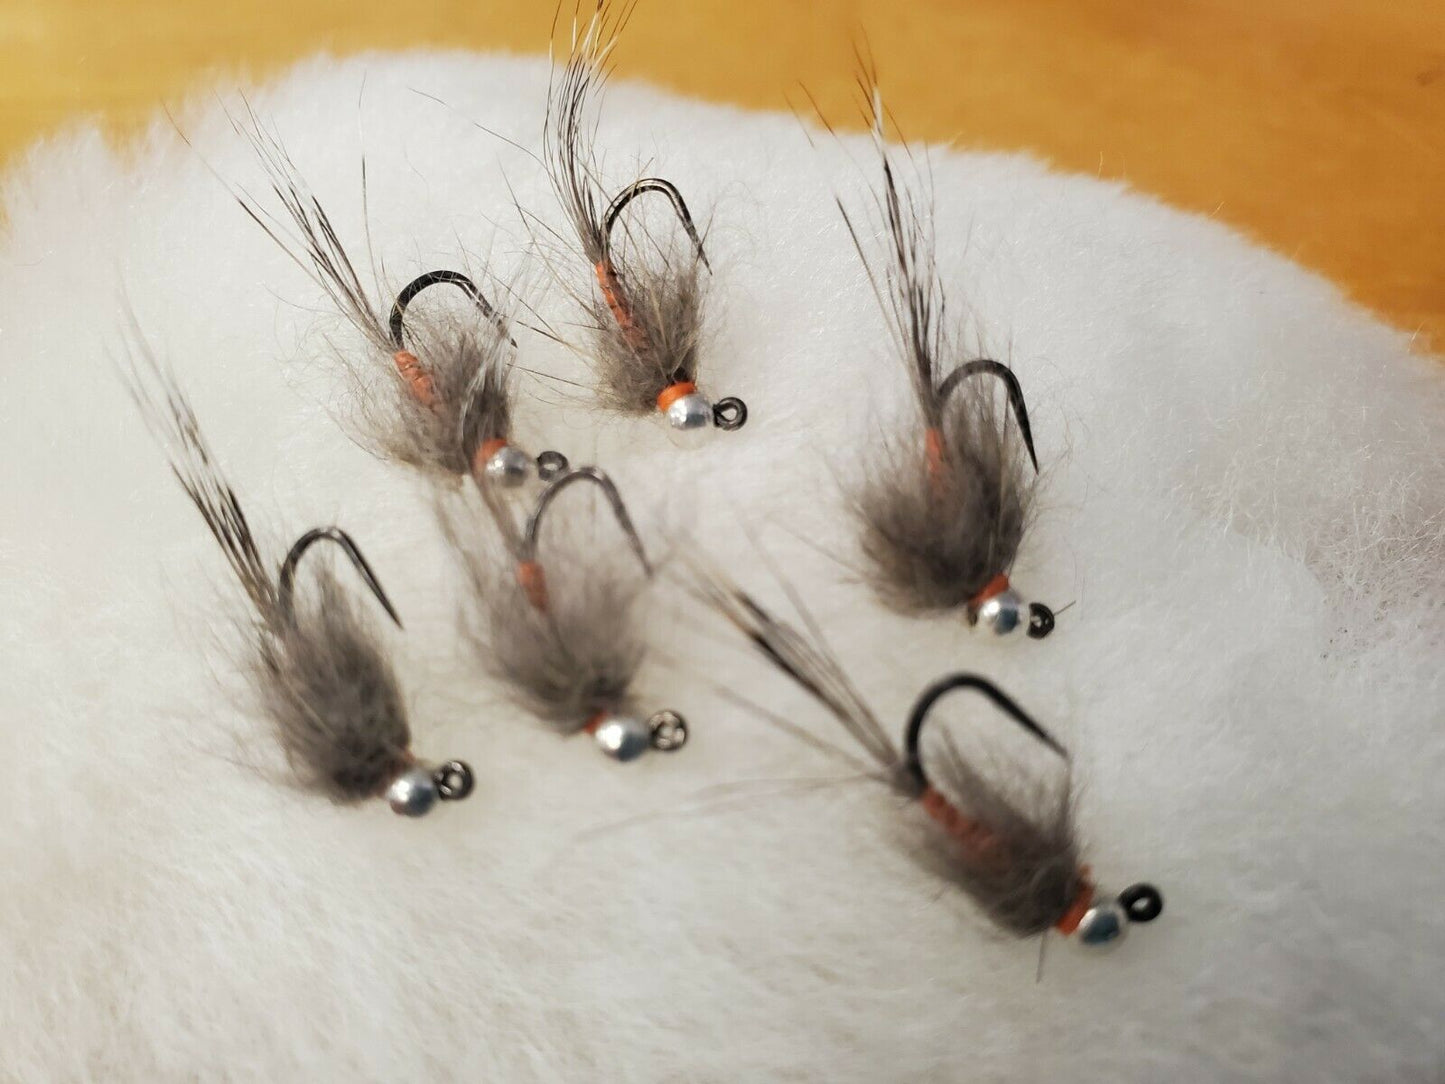 Tungsten Bead Head Hare's Ear Jig Fly, Bead Head Hares Ear, BH Trout Jig #14- #18